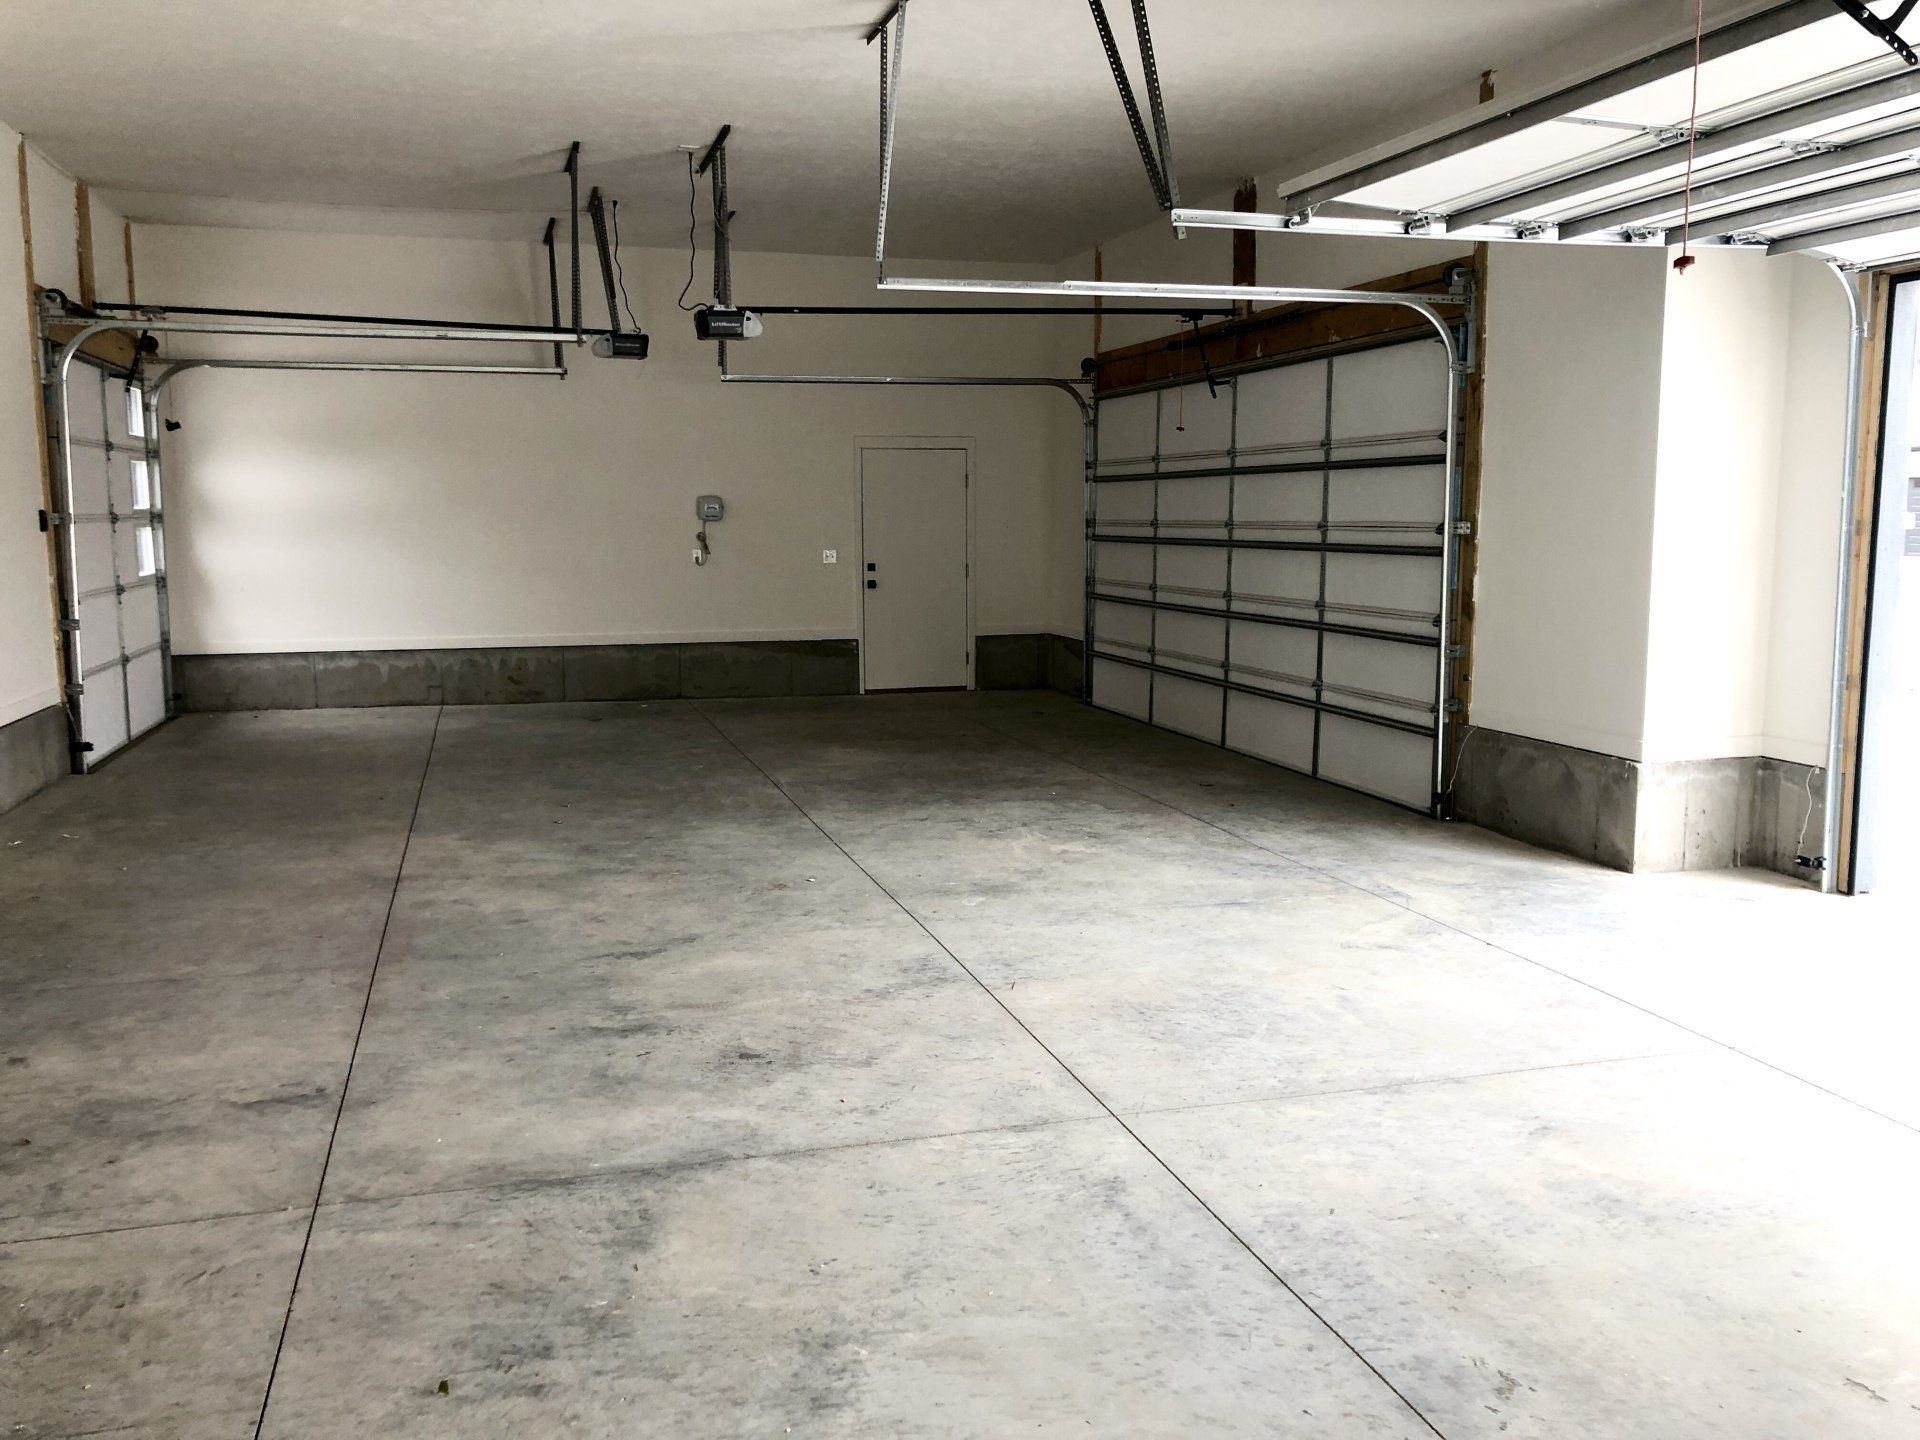 4525 Lambert Place garage space